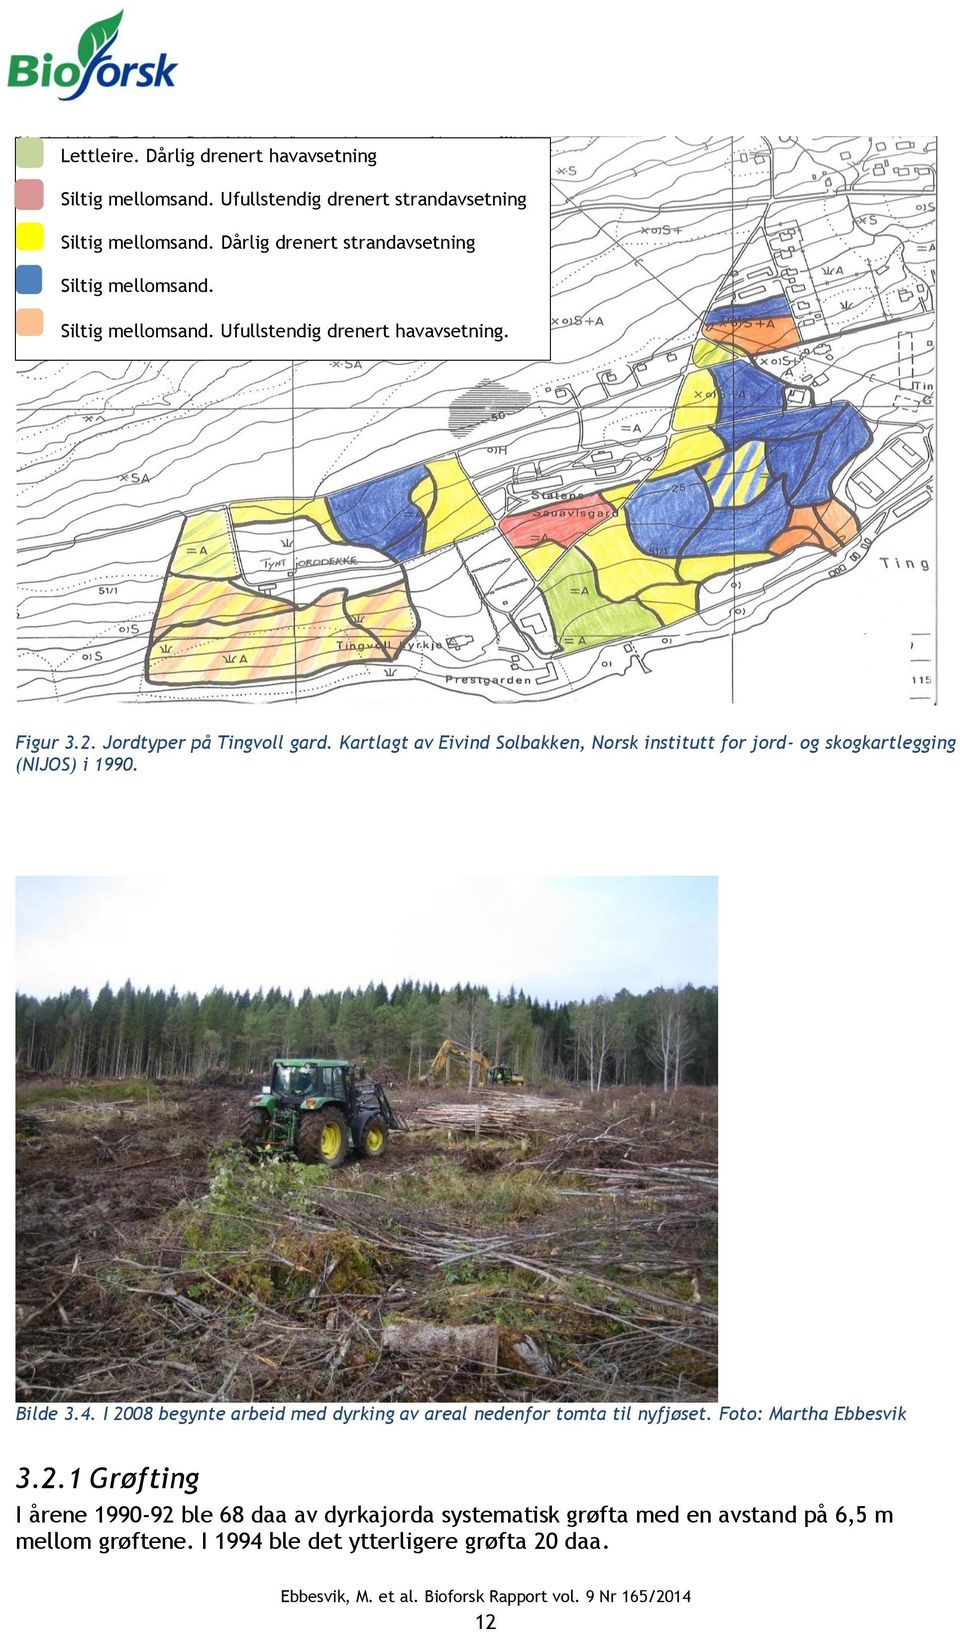 Kartlagt av Eivind Solbakken, Norsk institutt for jord- og skogkartlegging (NIJOS) i 1990. Bilde 3.4.